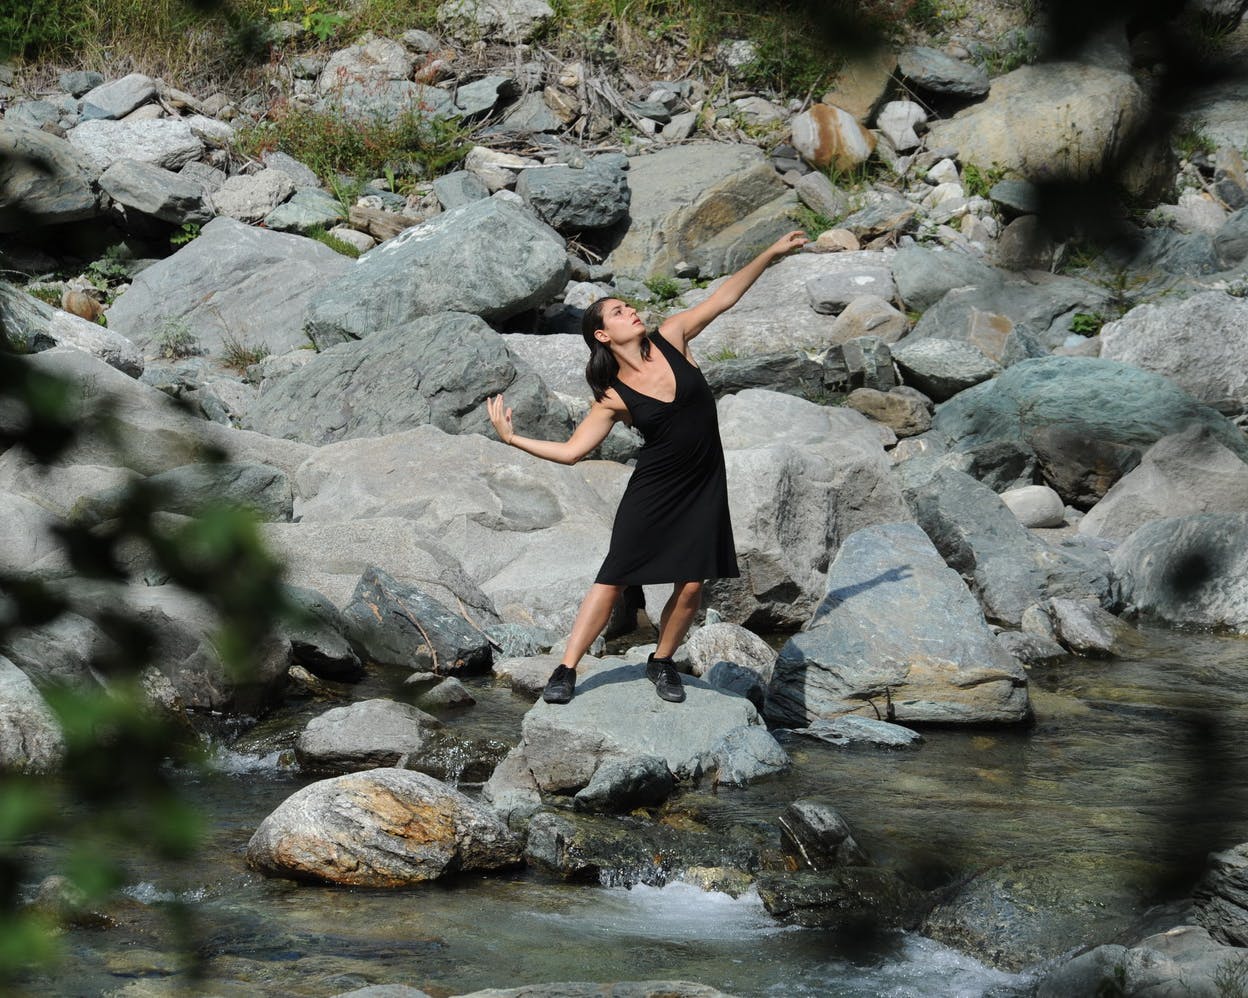 La danzatrice è in piedi su una roccia di un fiume